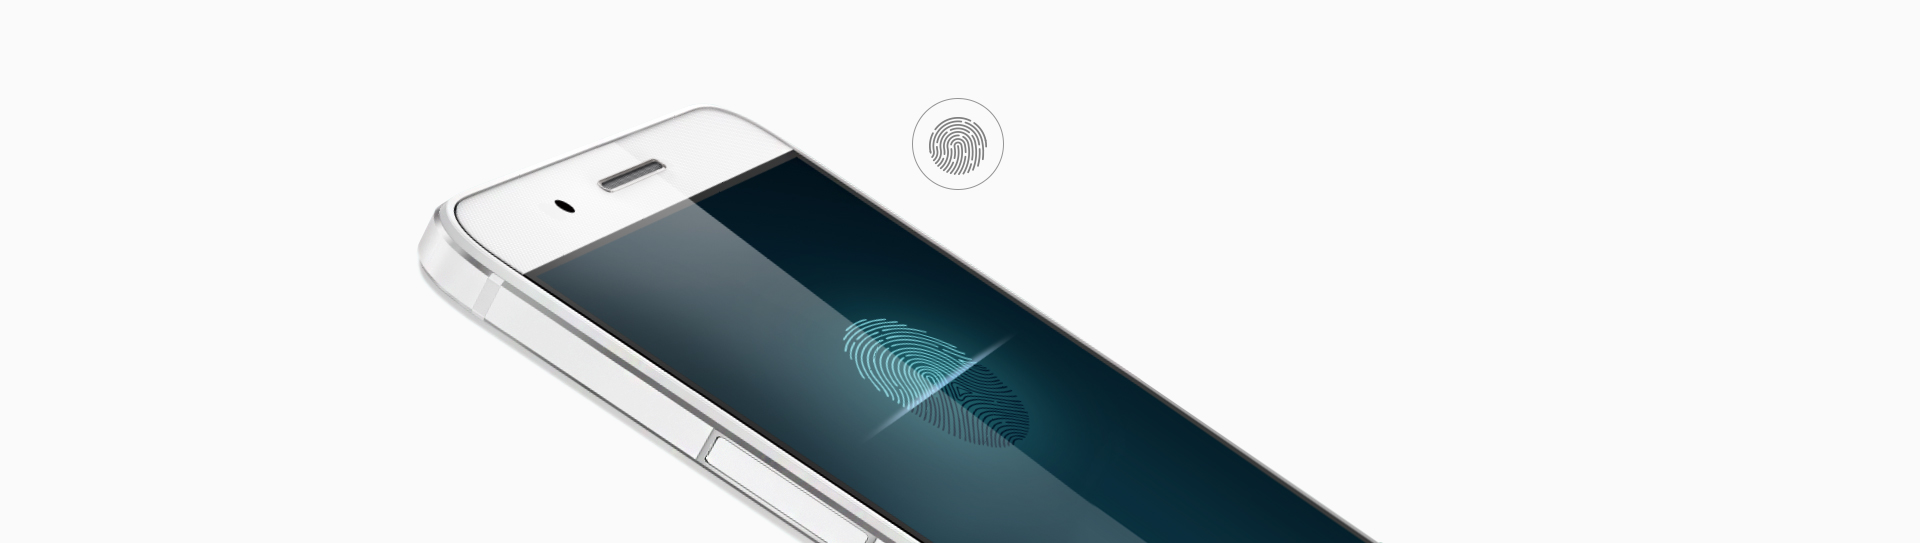 Biometrické zabezpeční? Ano, Huawei ShotX má rychlou čtečku otisků prstů.